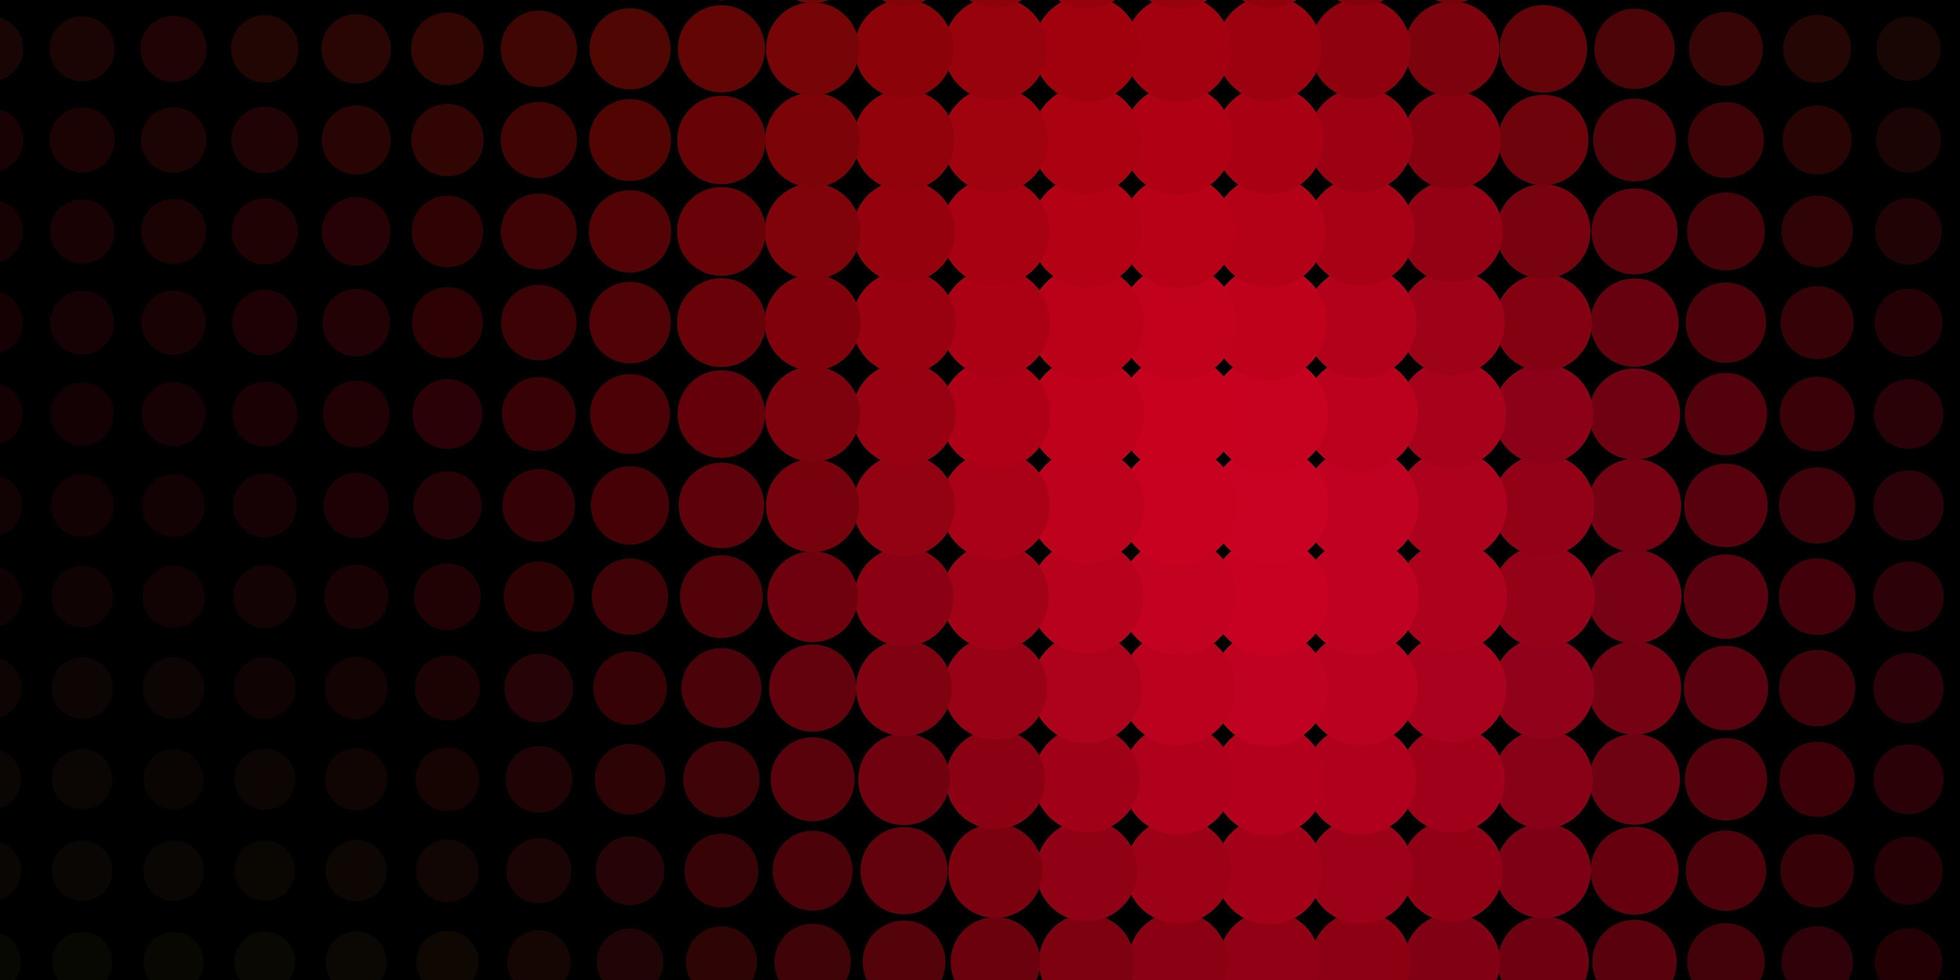 padrão de vetor vermelho escuro com círculos.